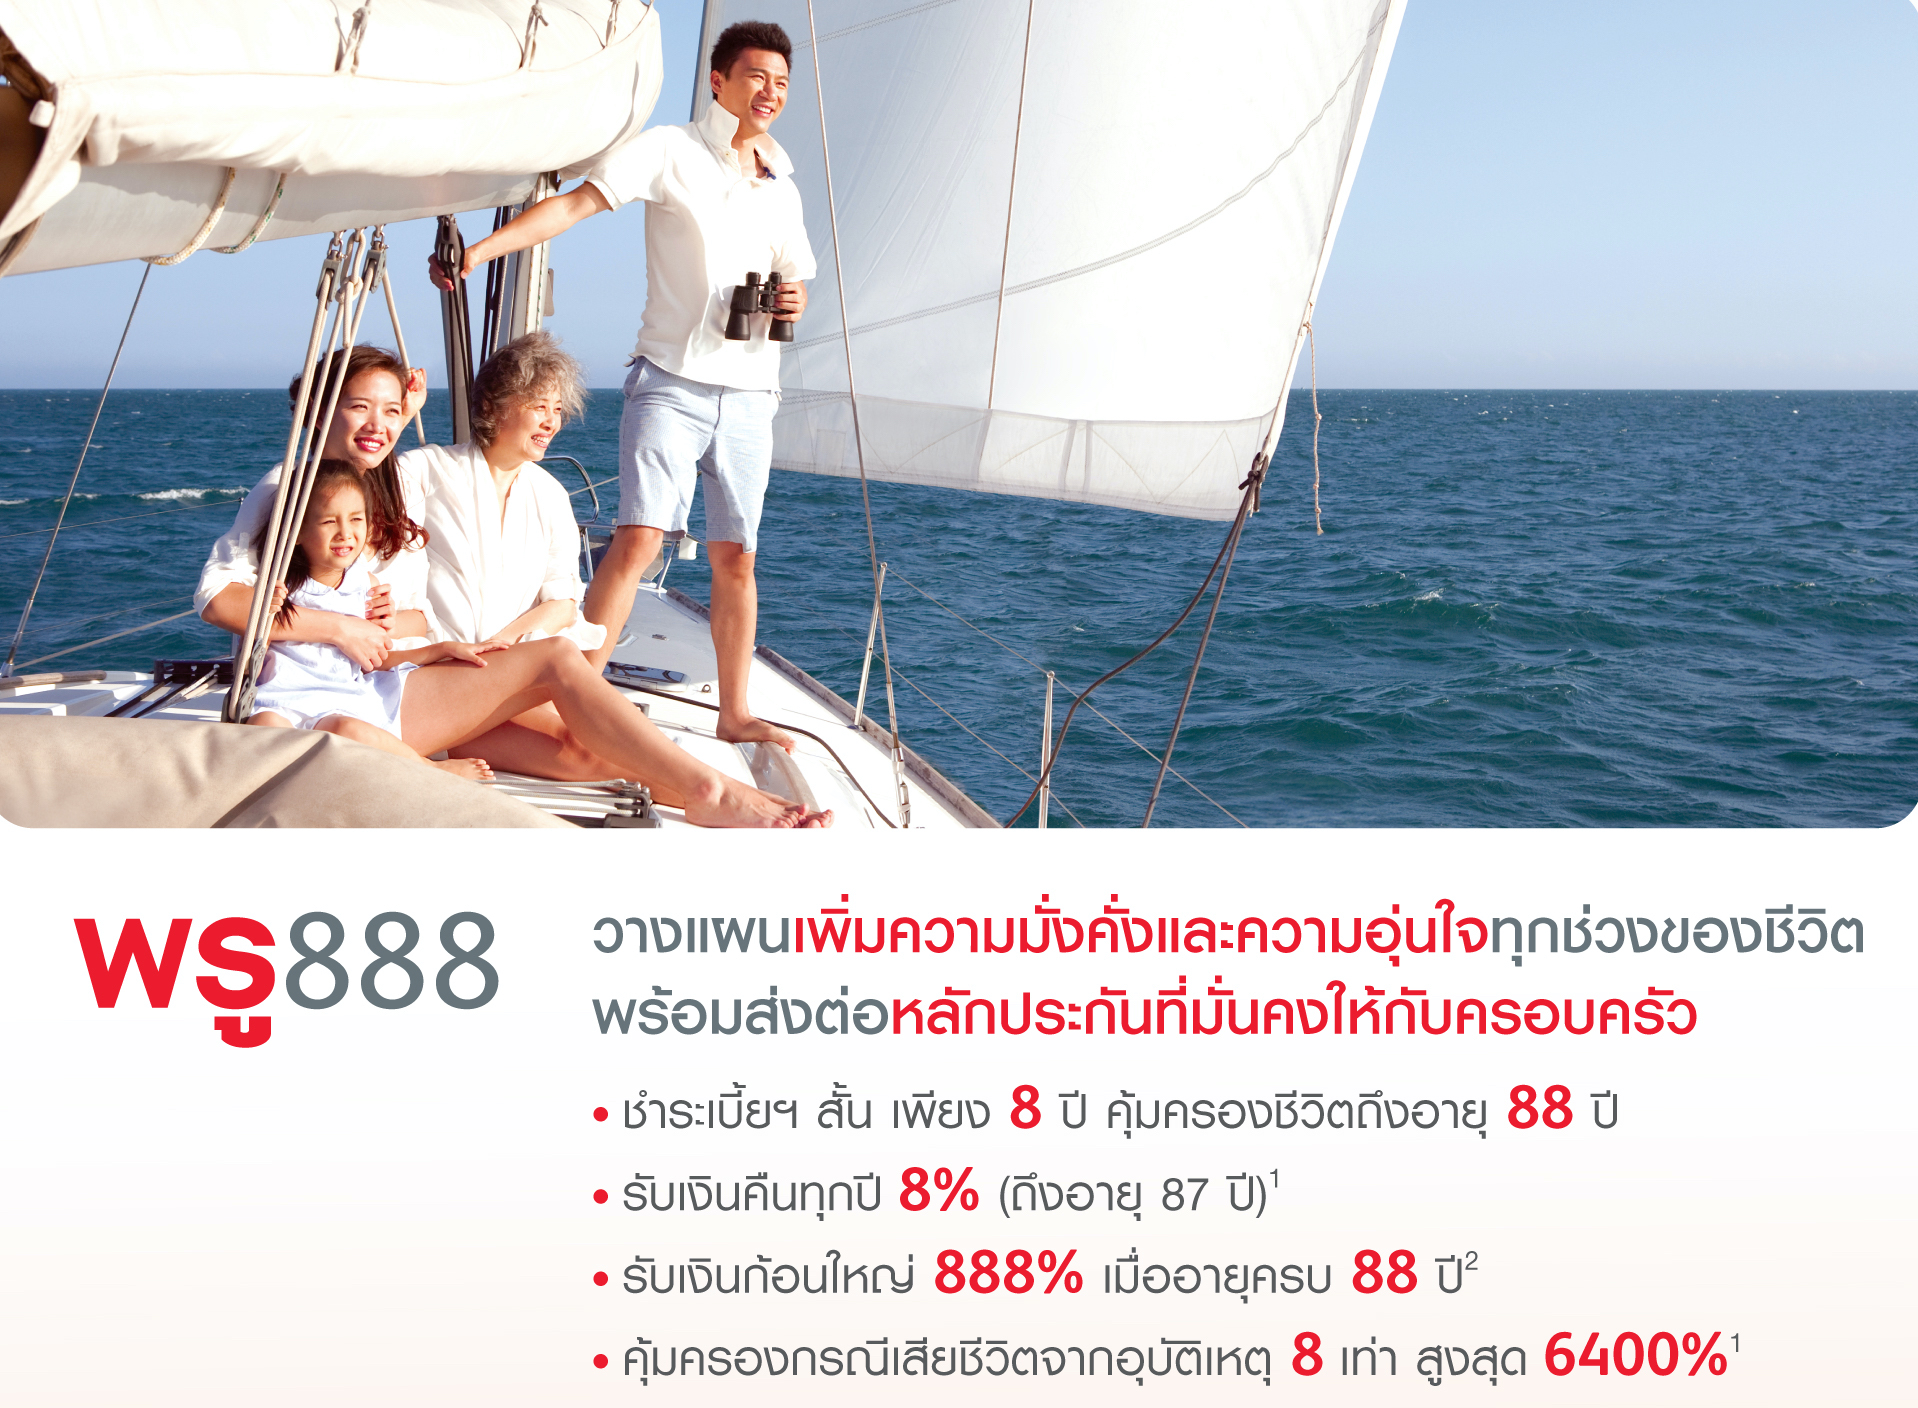 พรูเด็นเชียล ประเทศไทย ชวนวางแผนการเงินกับพรู 888 เพิ่มความมั่งคั่ง